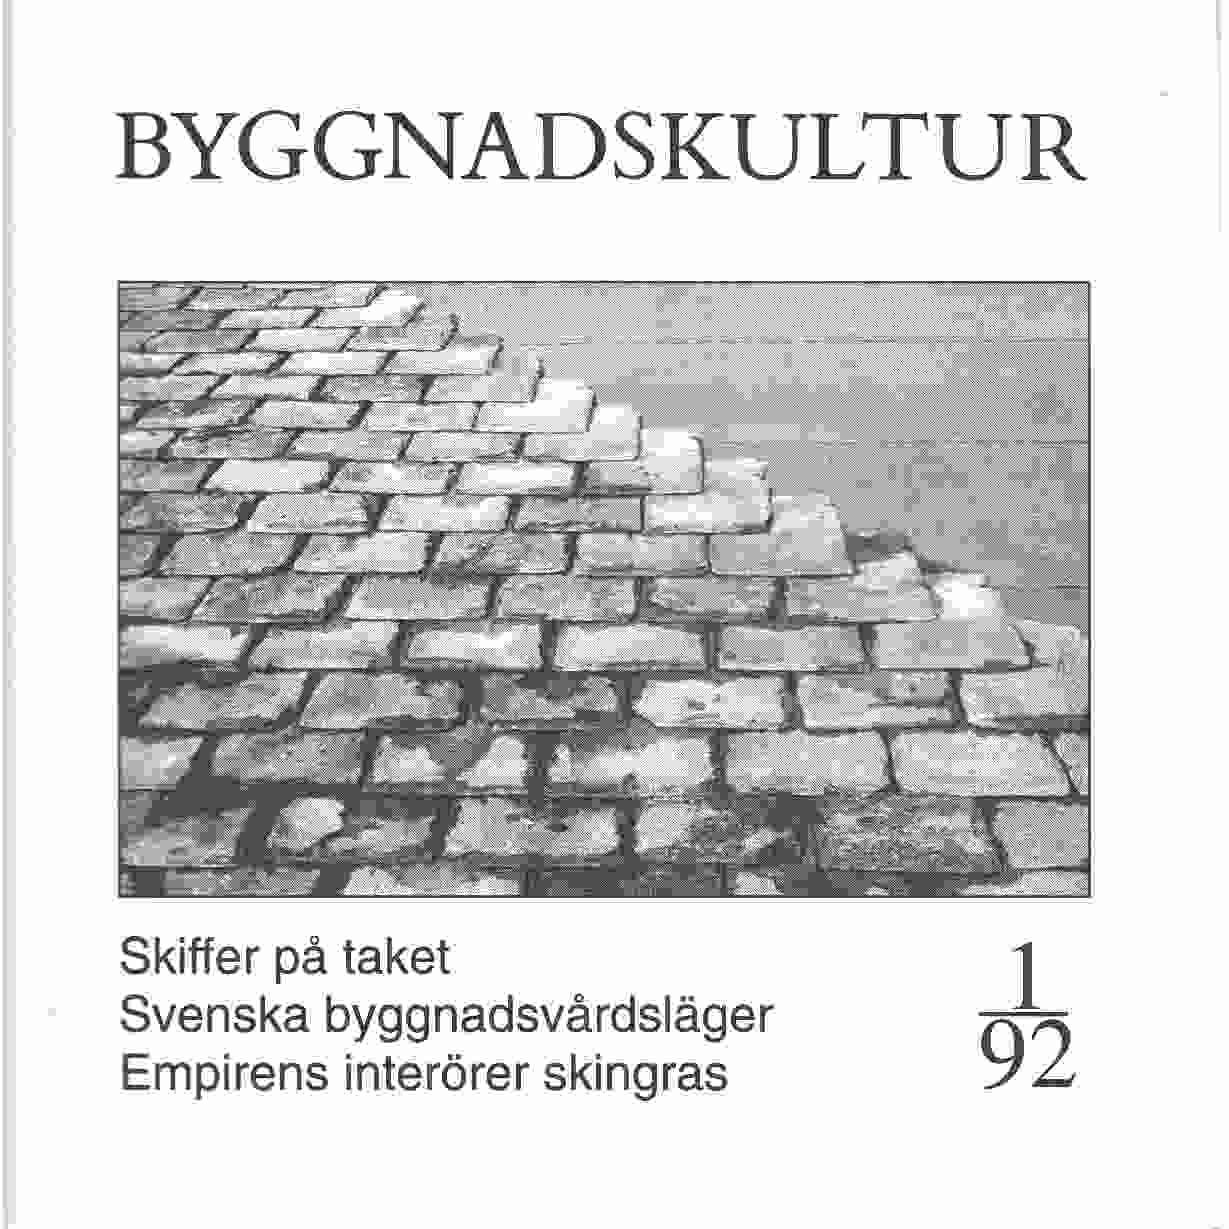 Byggnadskultur 1/92 : meddelande från Svenska föreningen för byggnadsvård - Red.